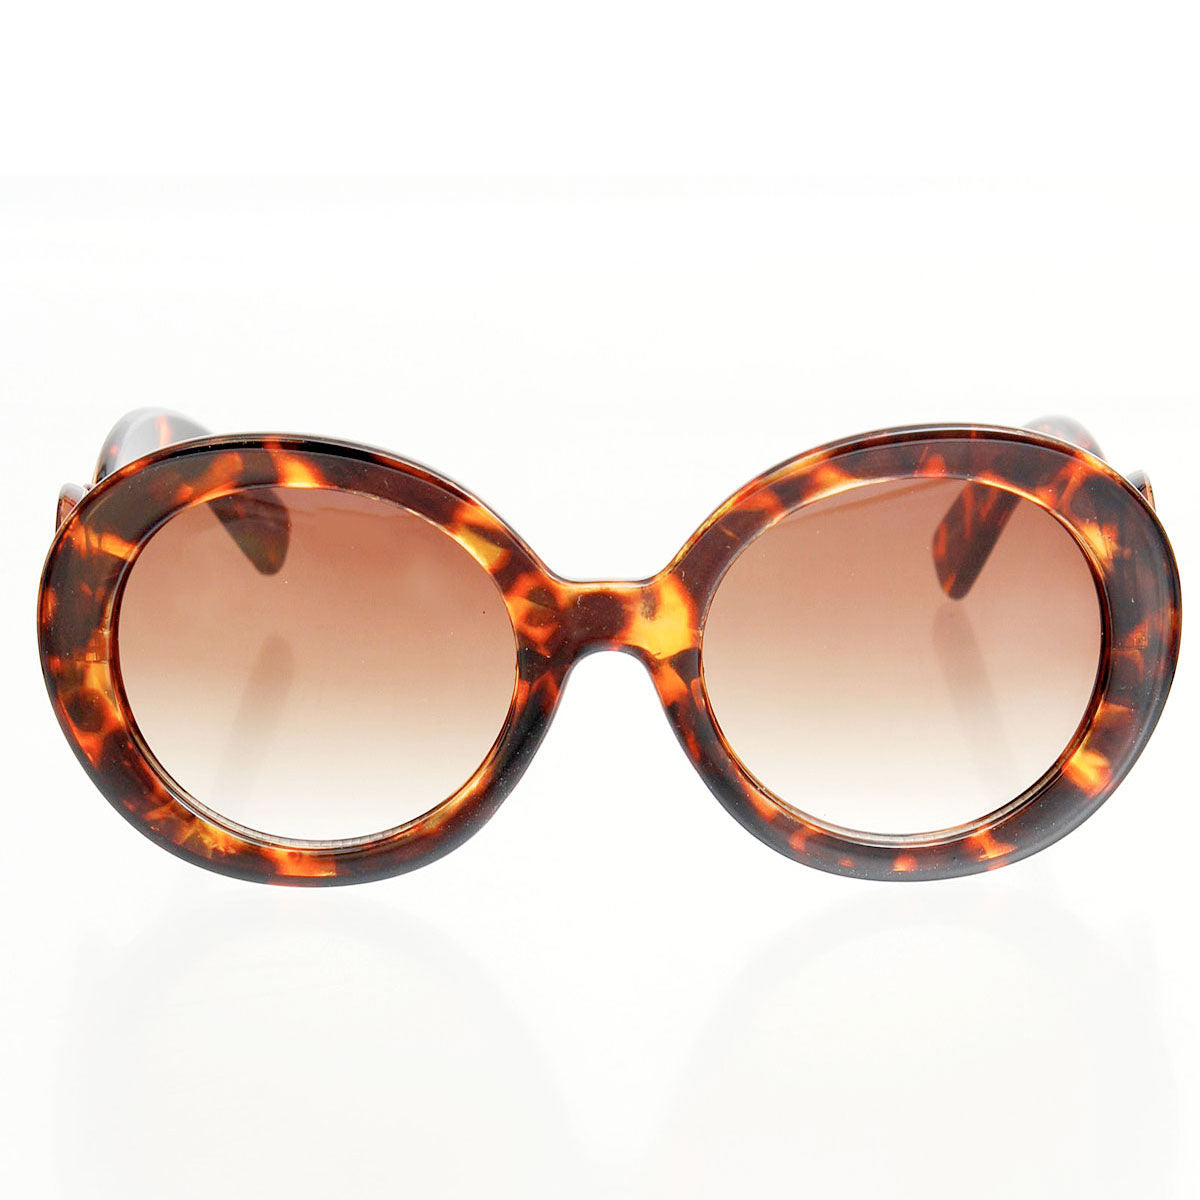 Sunglasses Round Tortoiseshell Swirl Eyewear Women